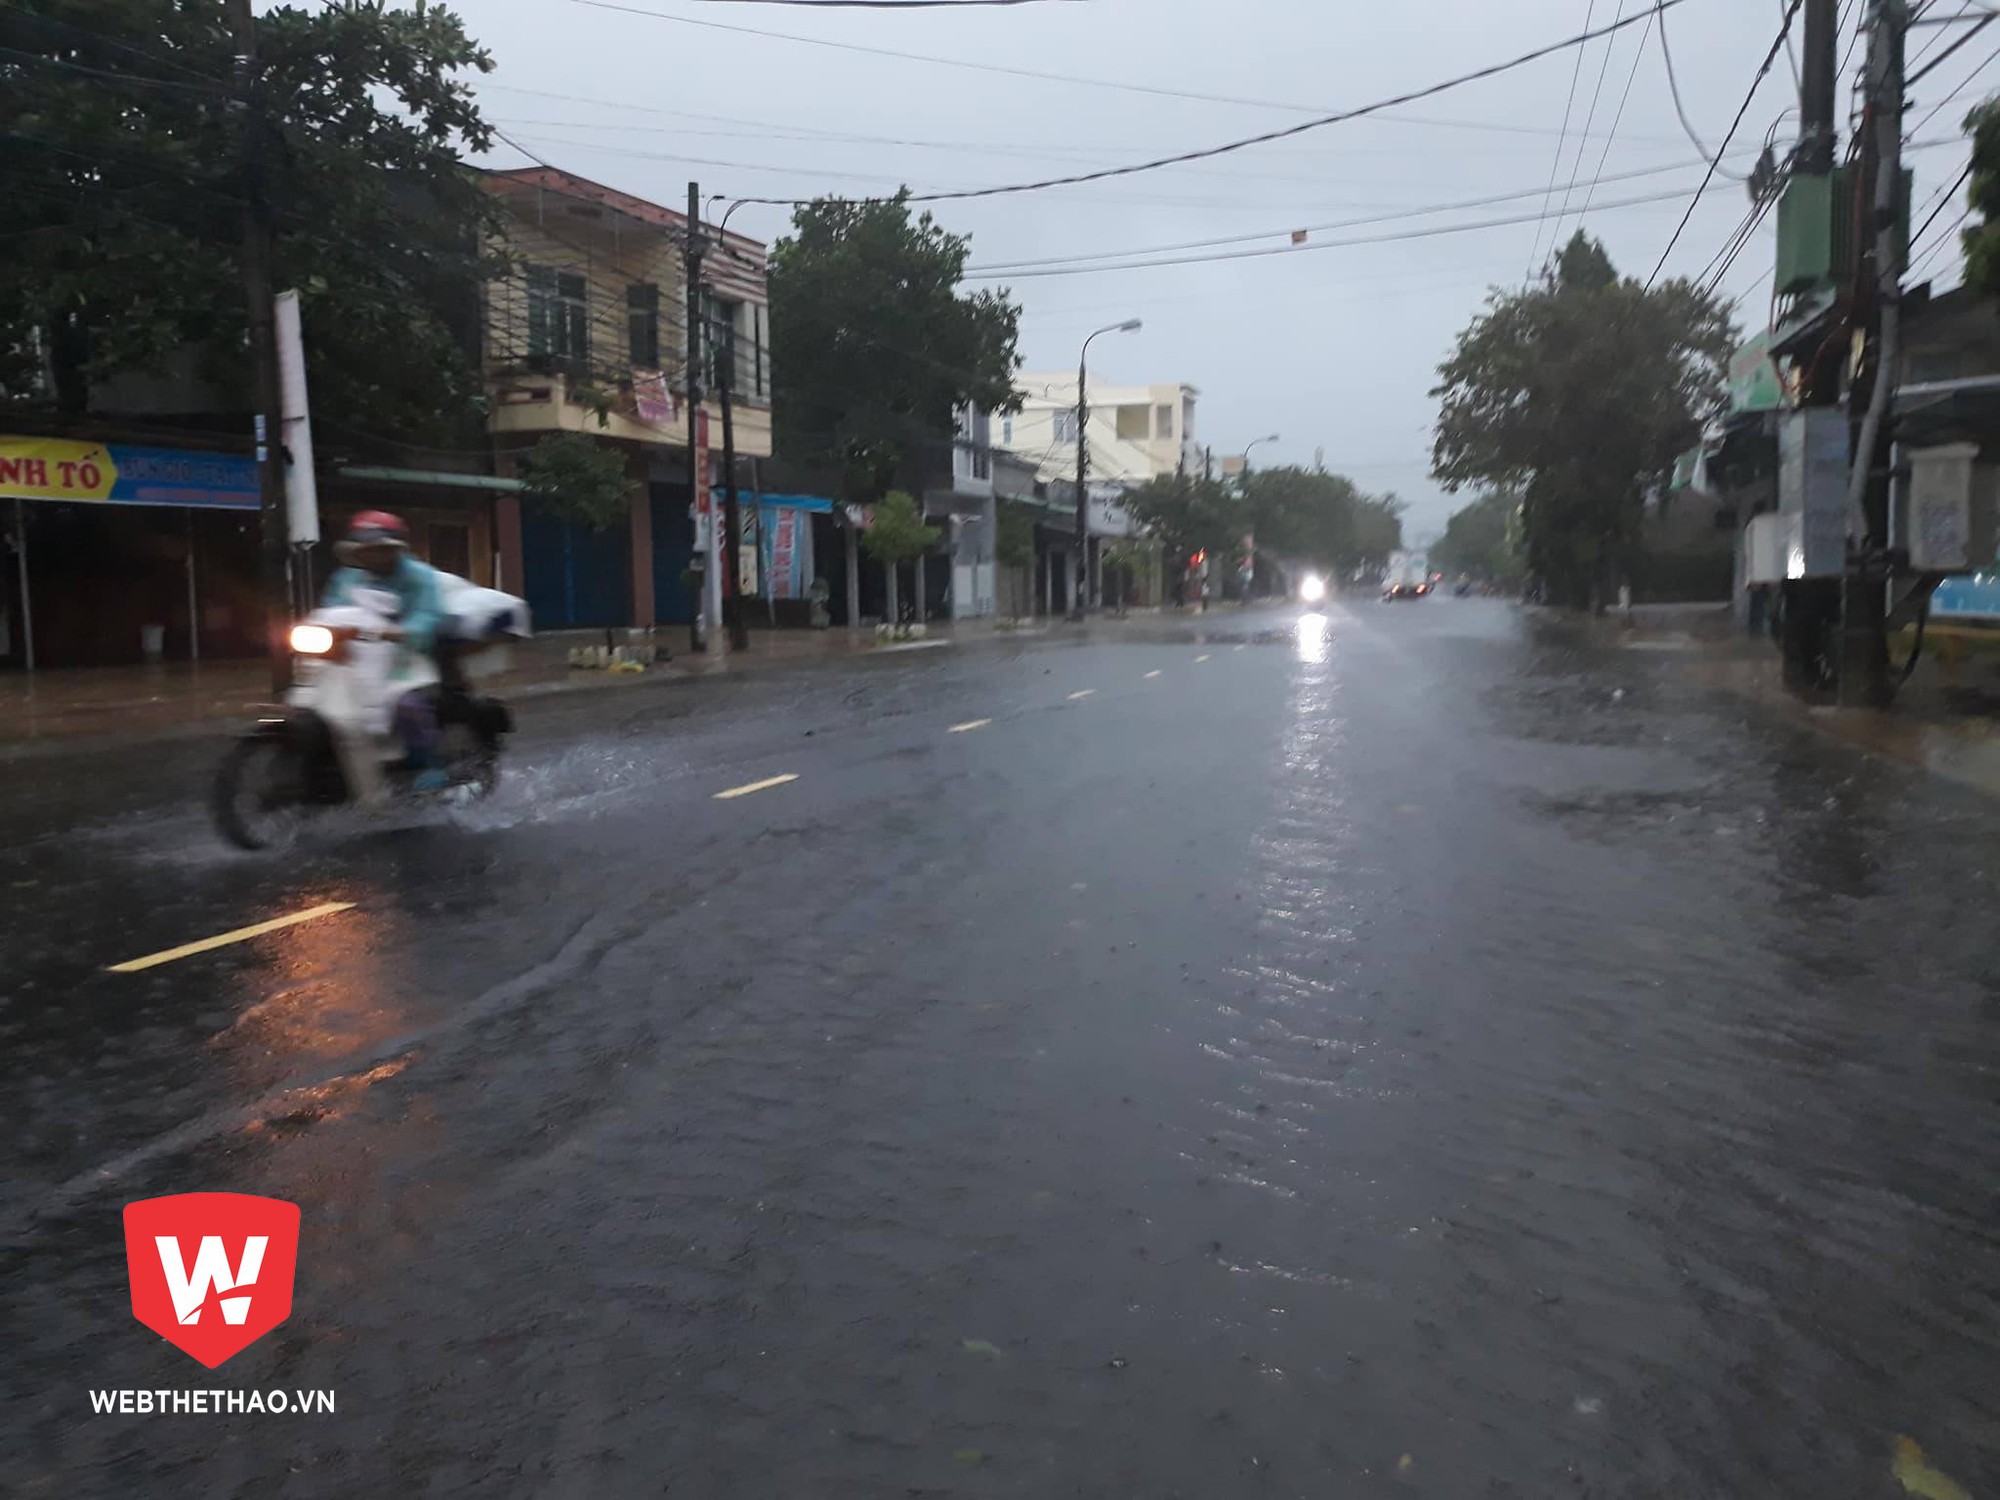 Thời điểm hiện tại, ở Quảng Nam vẫn đang mưa to, gió giật mạnh; thậm chí, một số huyện thị còn bị ngập sâu. Cho dù trận đấu có diễn ra như dự kiến thì rất khó để thu hút khản giả bởi ''nhà nhà lo chống bão, người người lo chạy lũ''. Ảnh: Bằng Lê